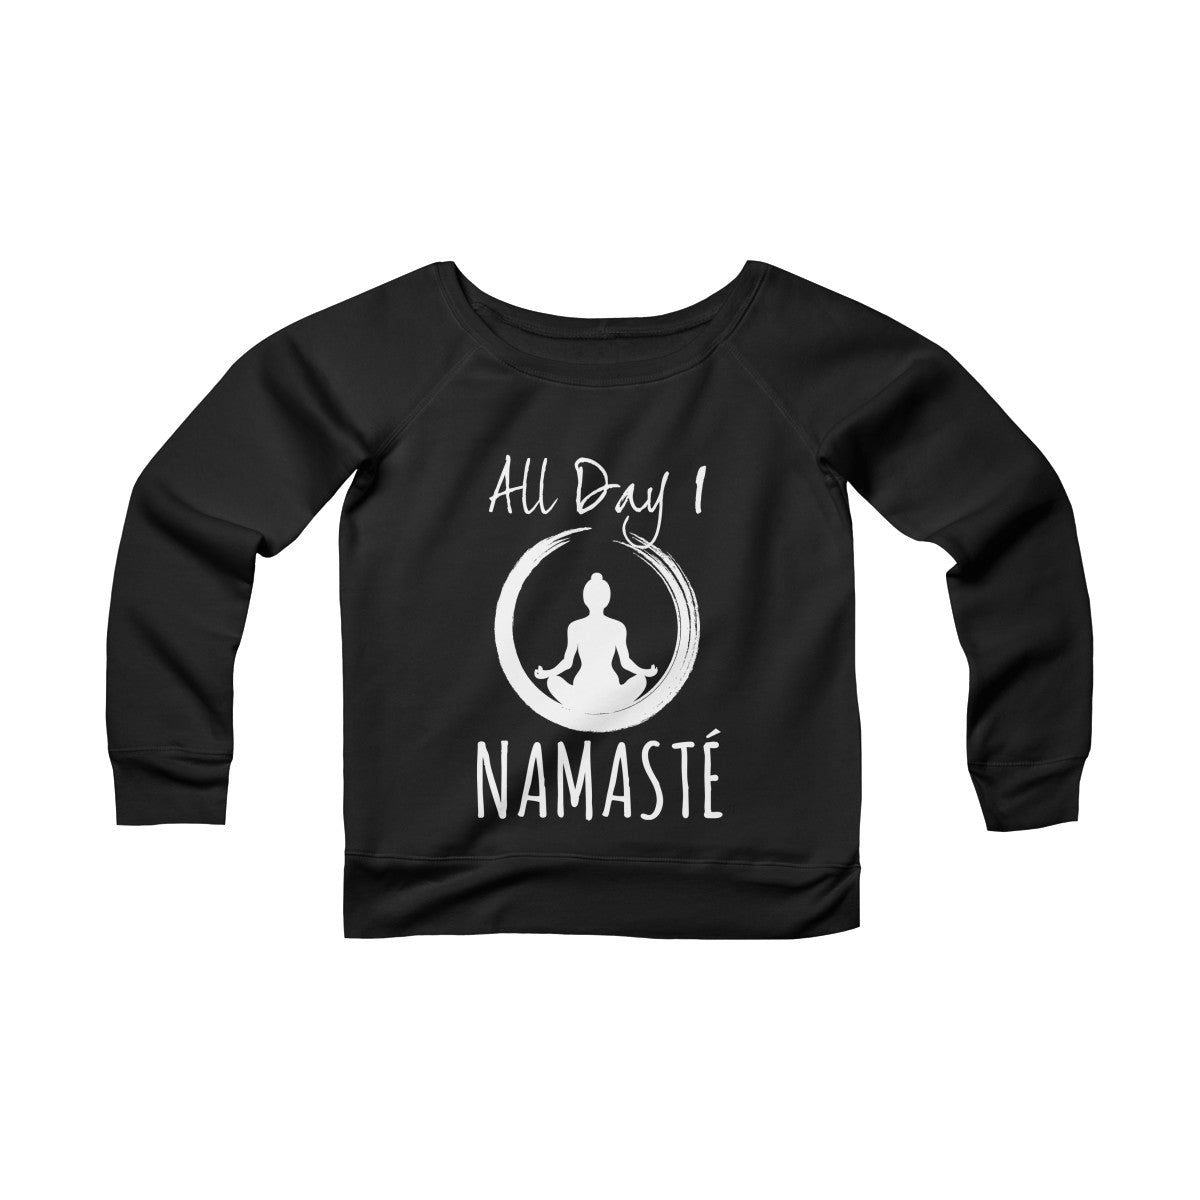 All Day I Namaste Yoga Sponge Fleece Wide Neck Sweatshirt